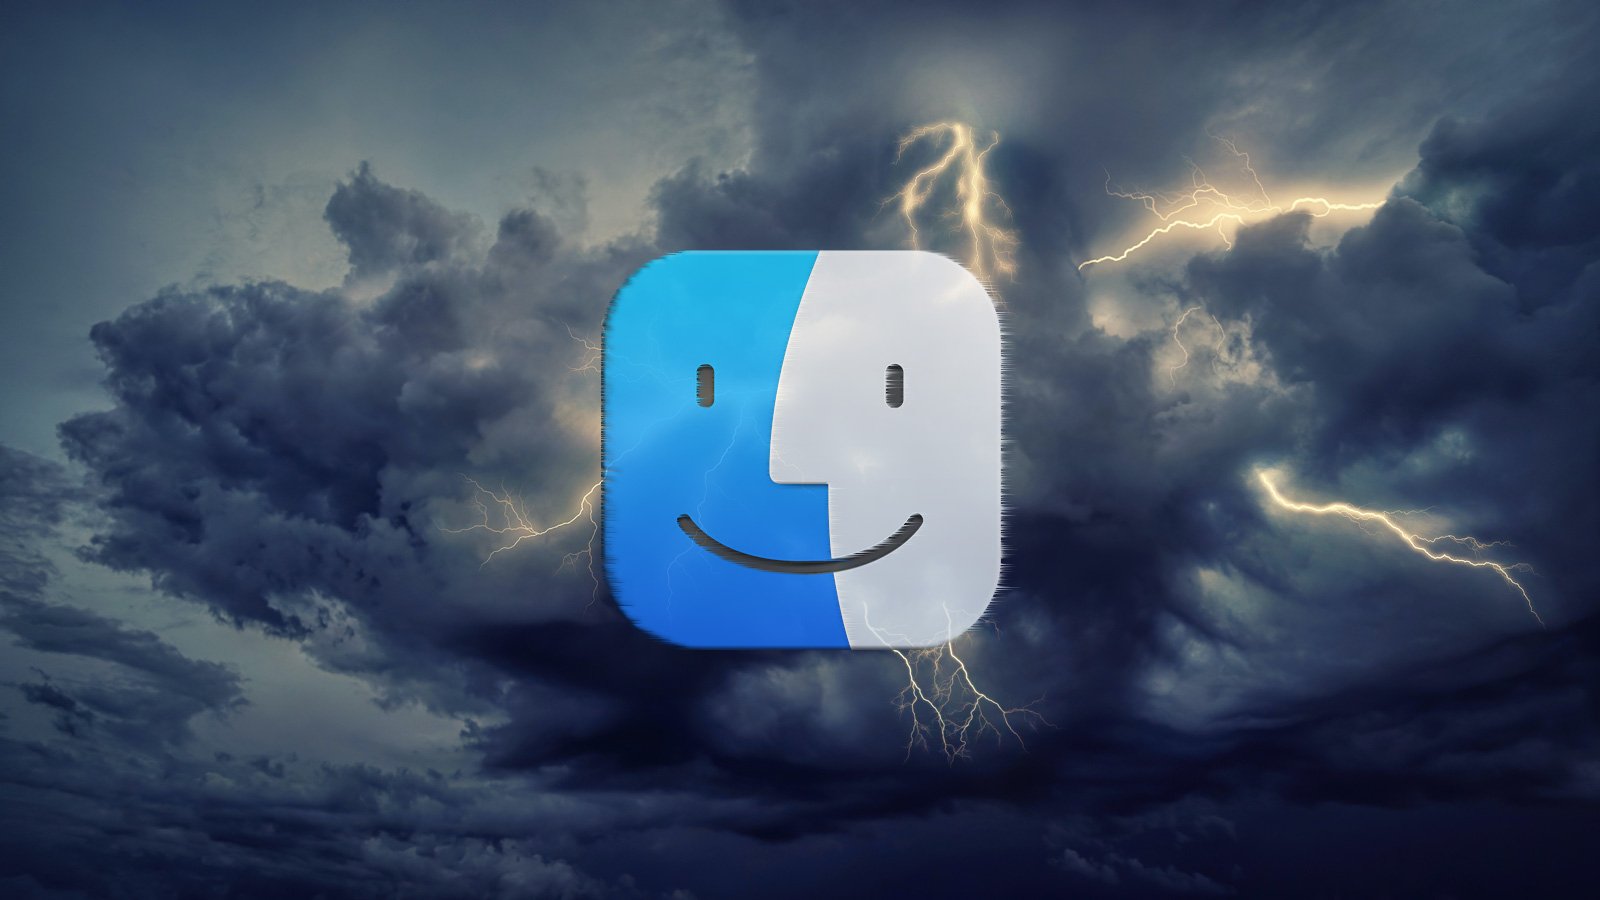 Logotipo de macOS con tormentas en el fondo